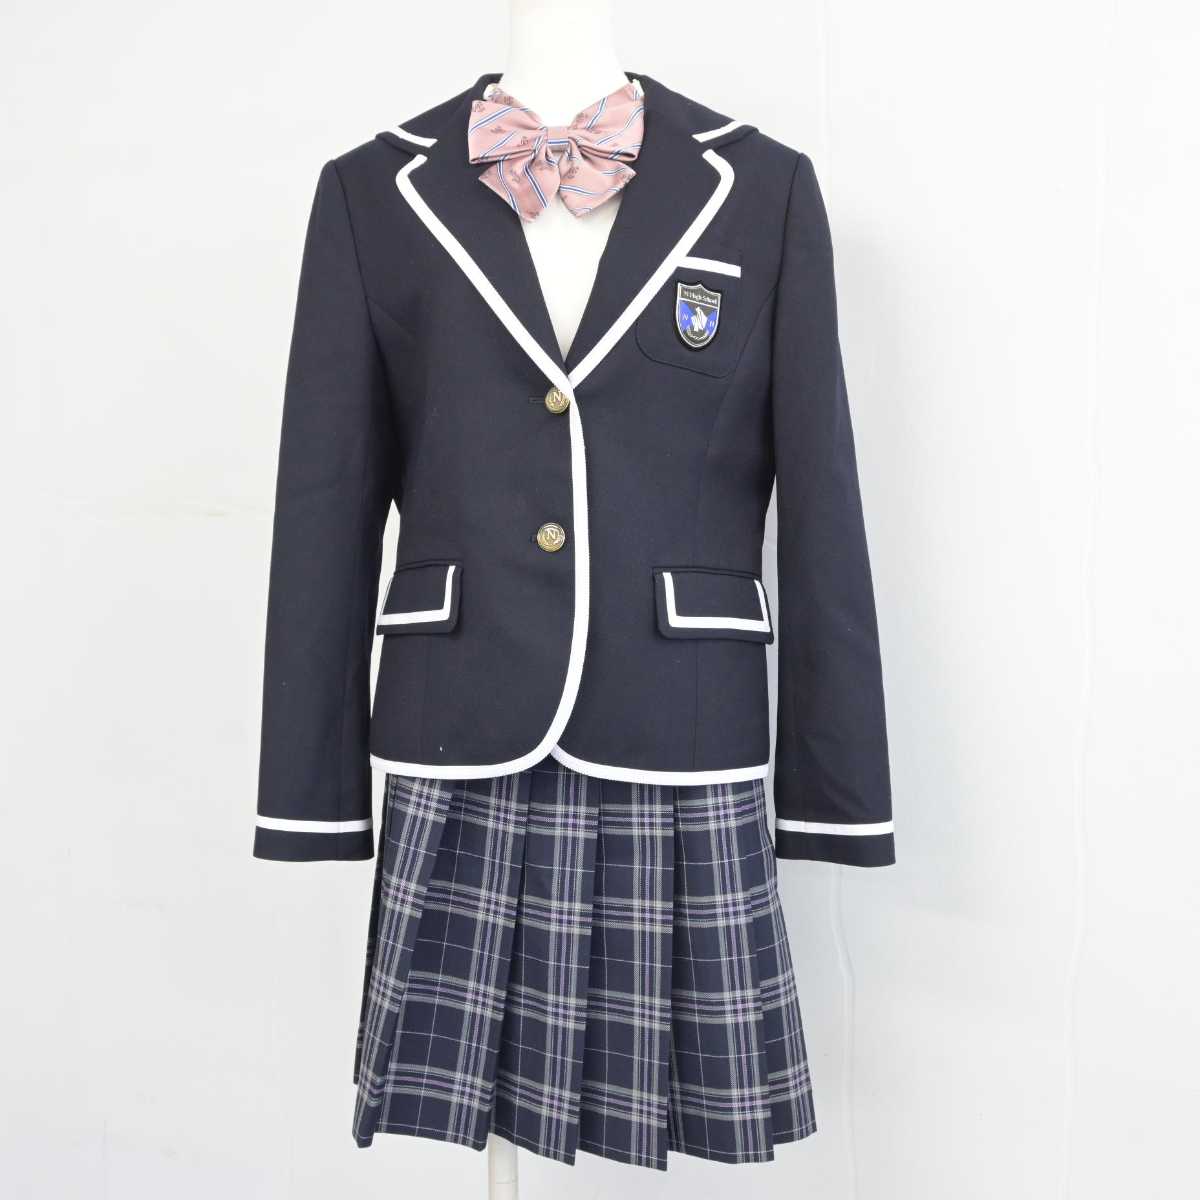 学校法人角川ドワンゴ学園N高等学校の制服です - テーラードジャケット